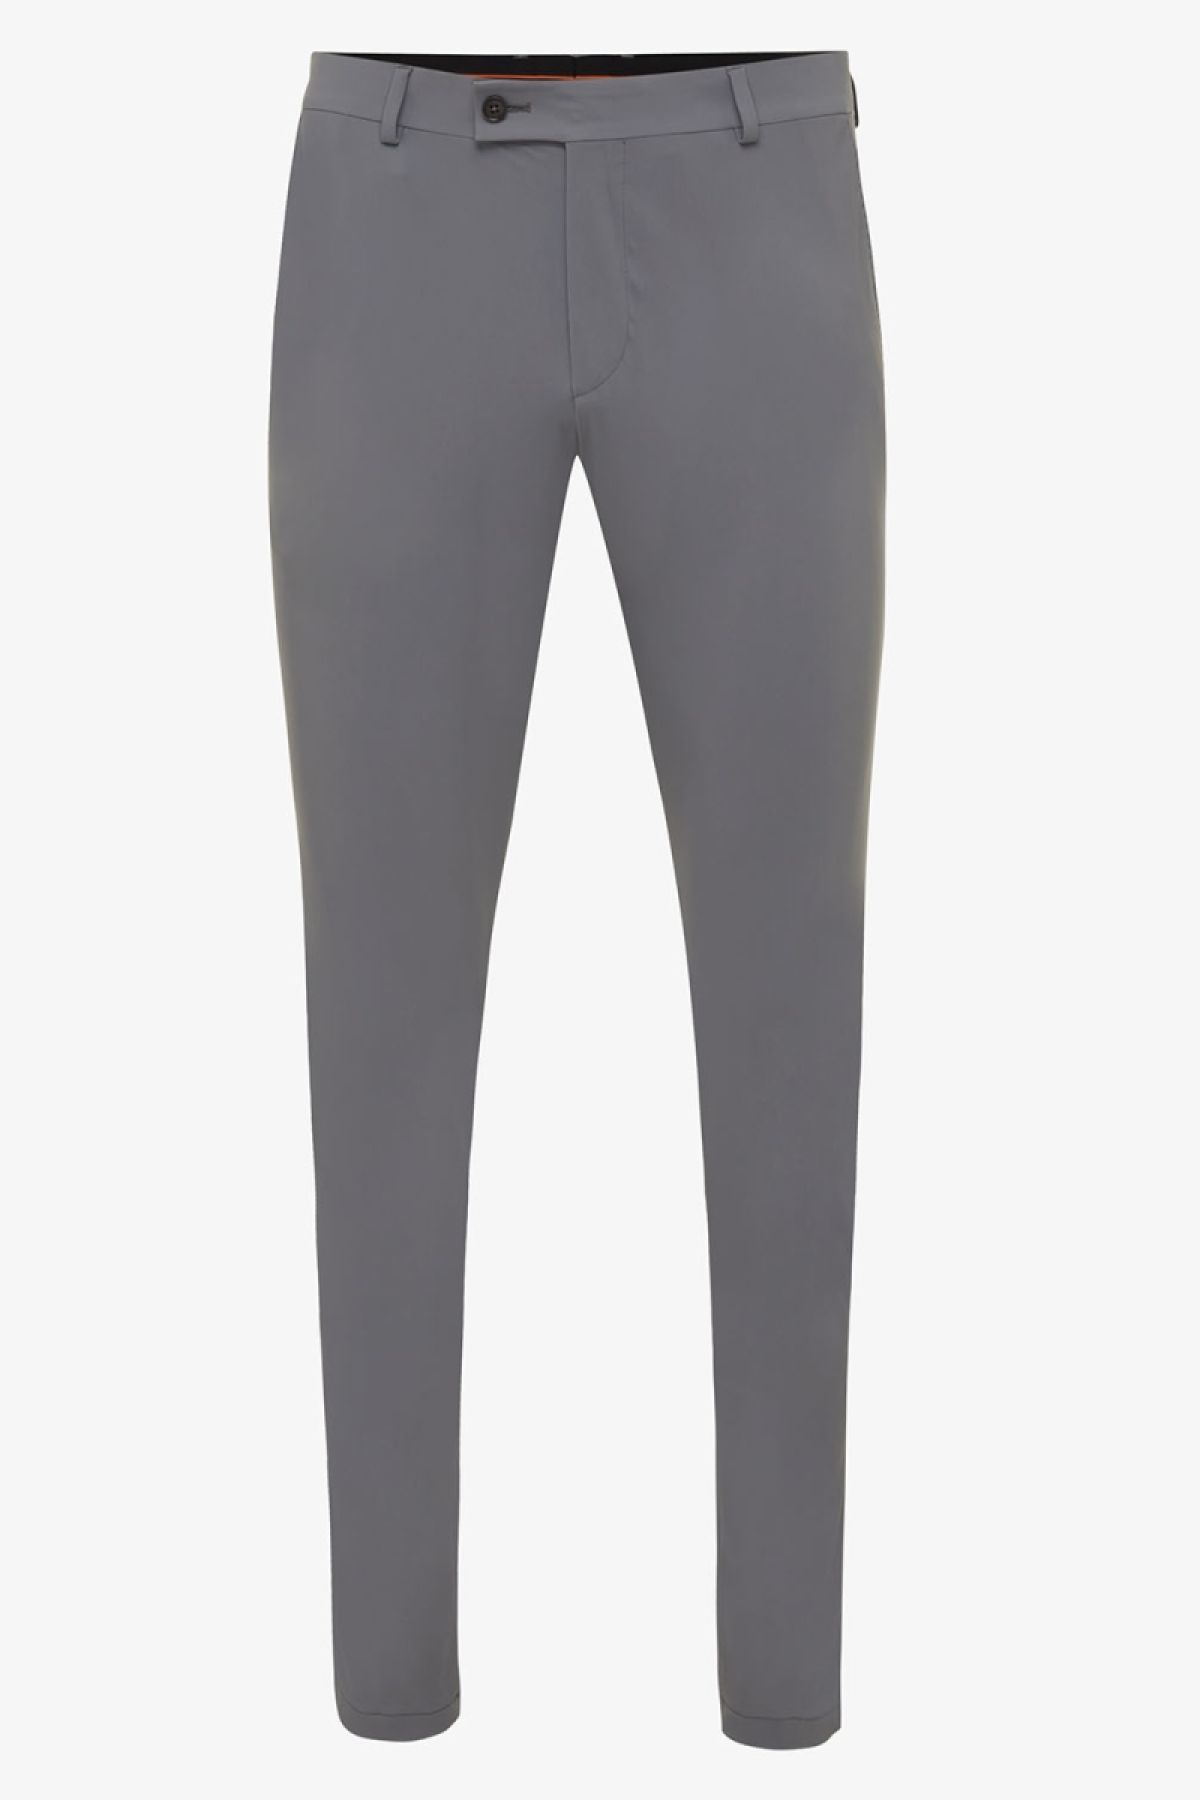 Dynamic stretch pantalon grijs